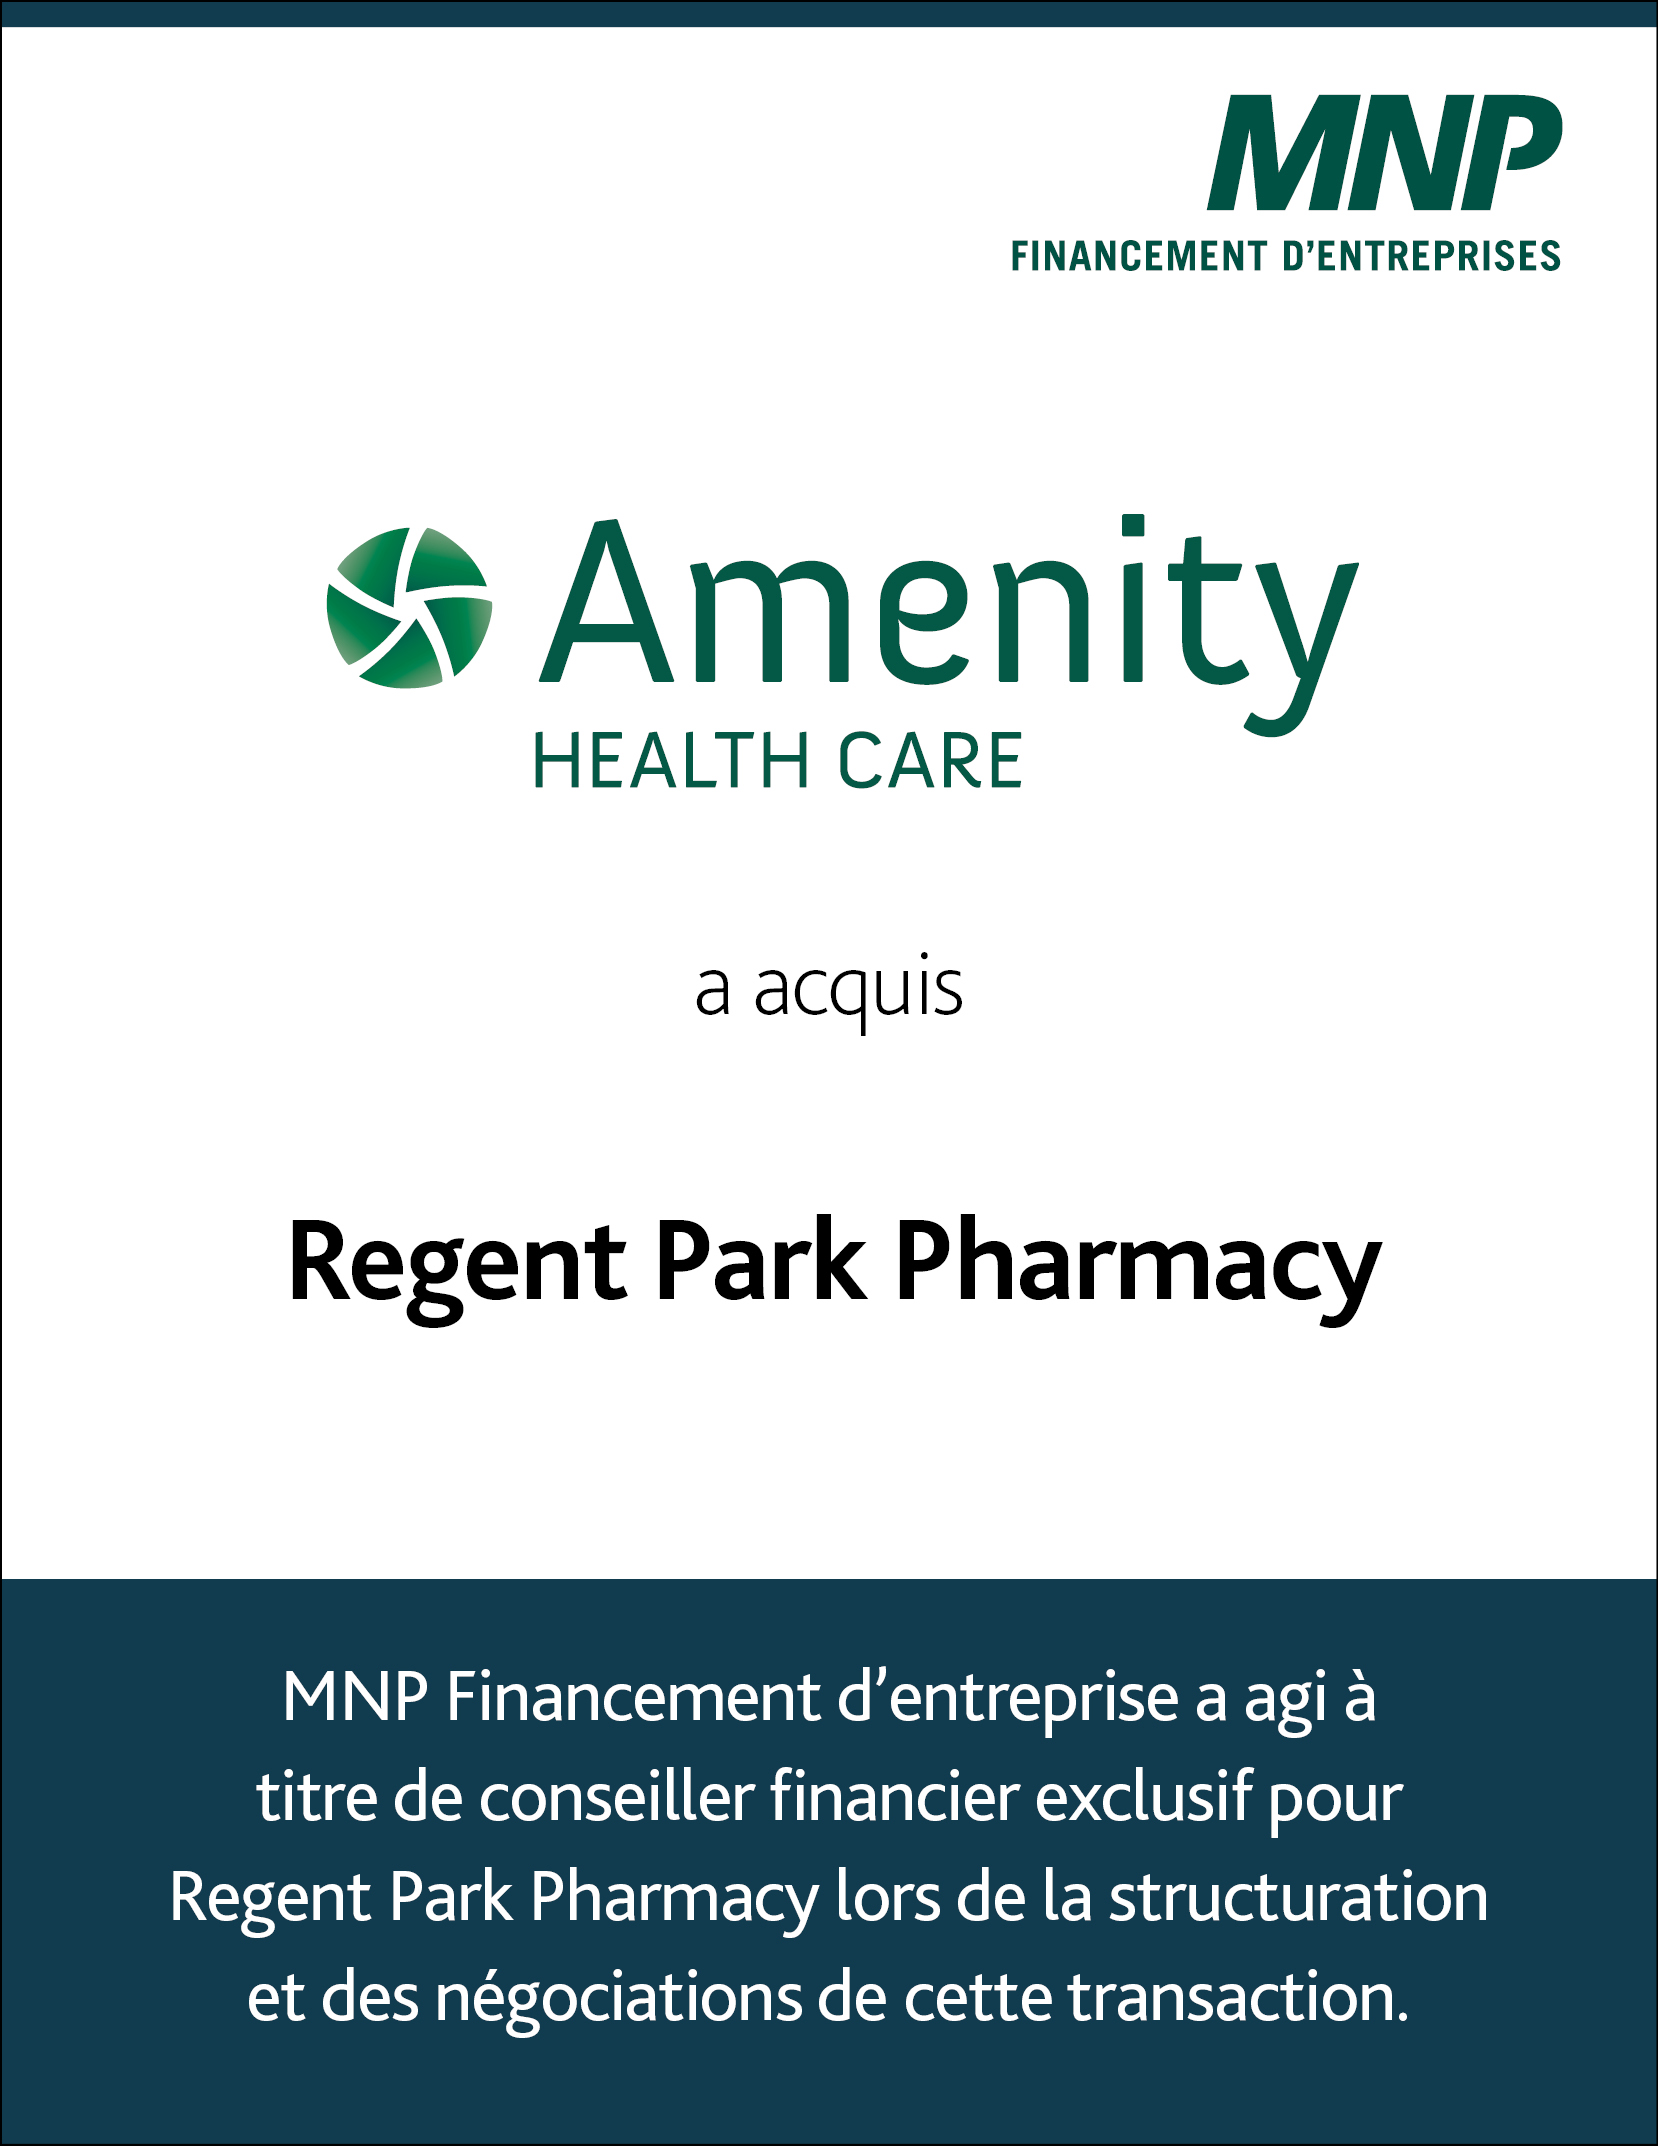 Amenity Health Care a fait l'acquisition de Regent Park Pharmacy.